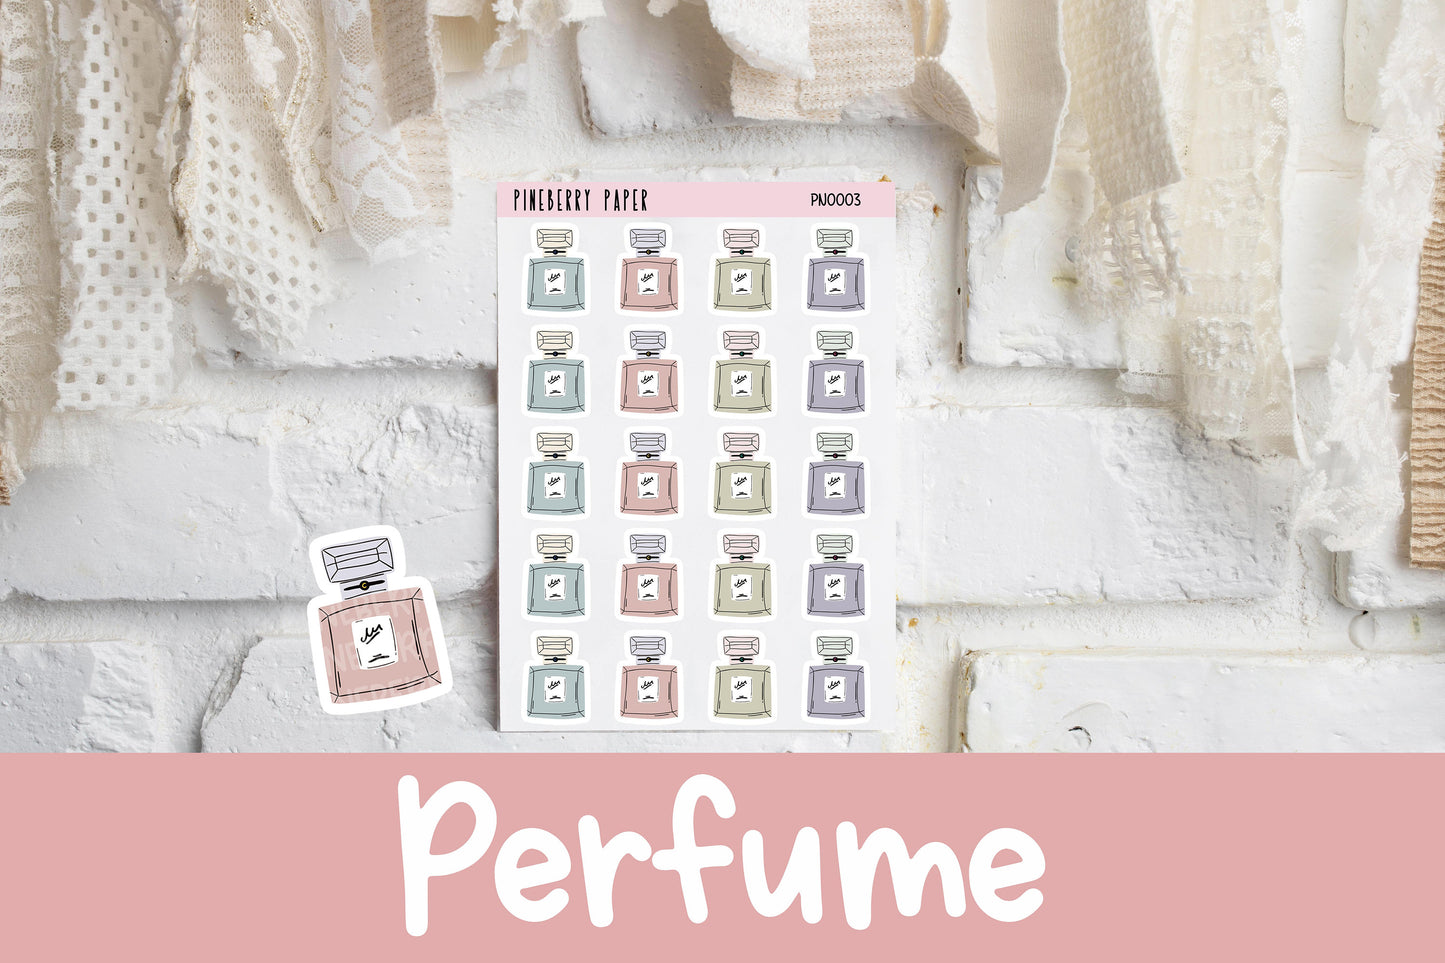 Perfume Bottles | PN0003